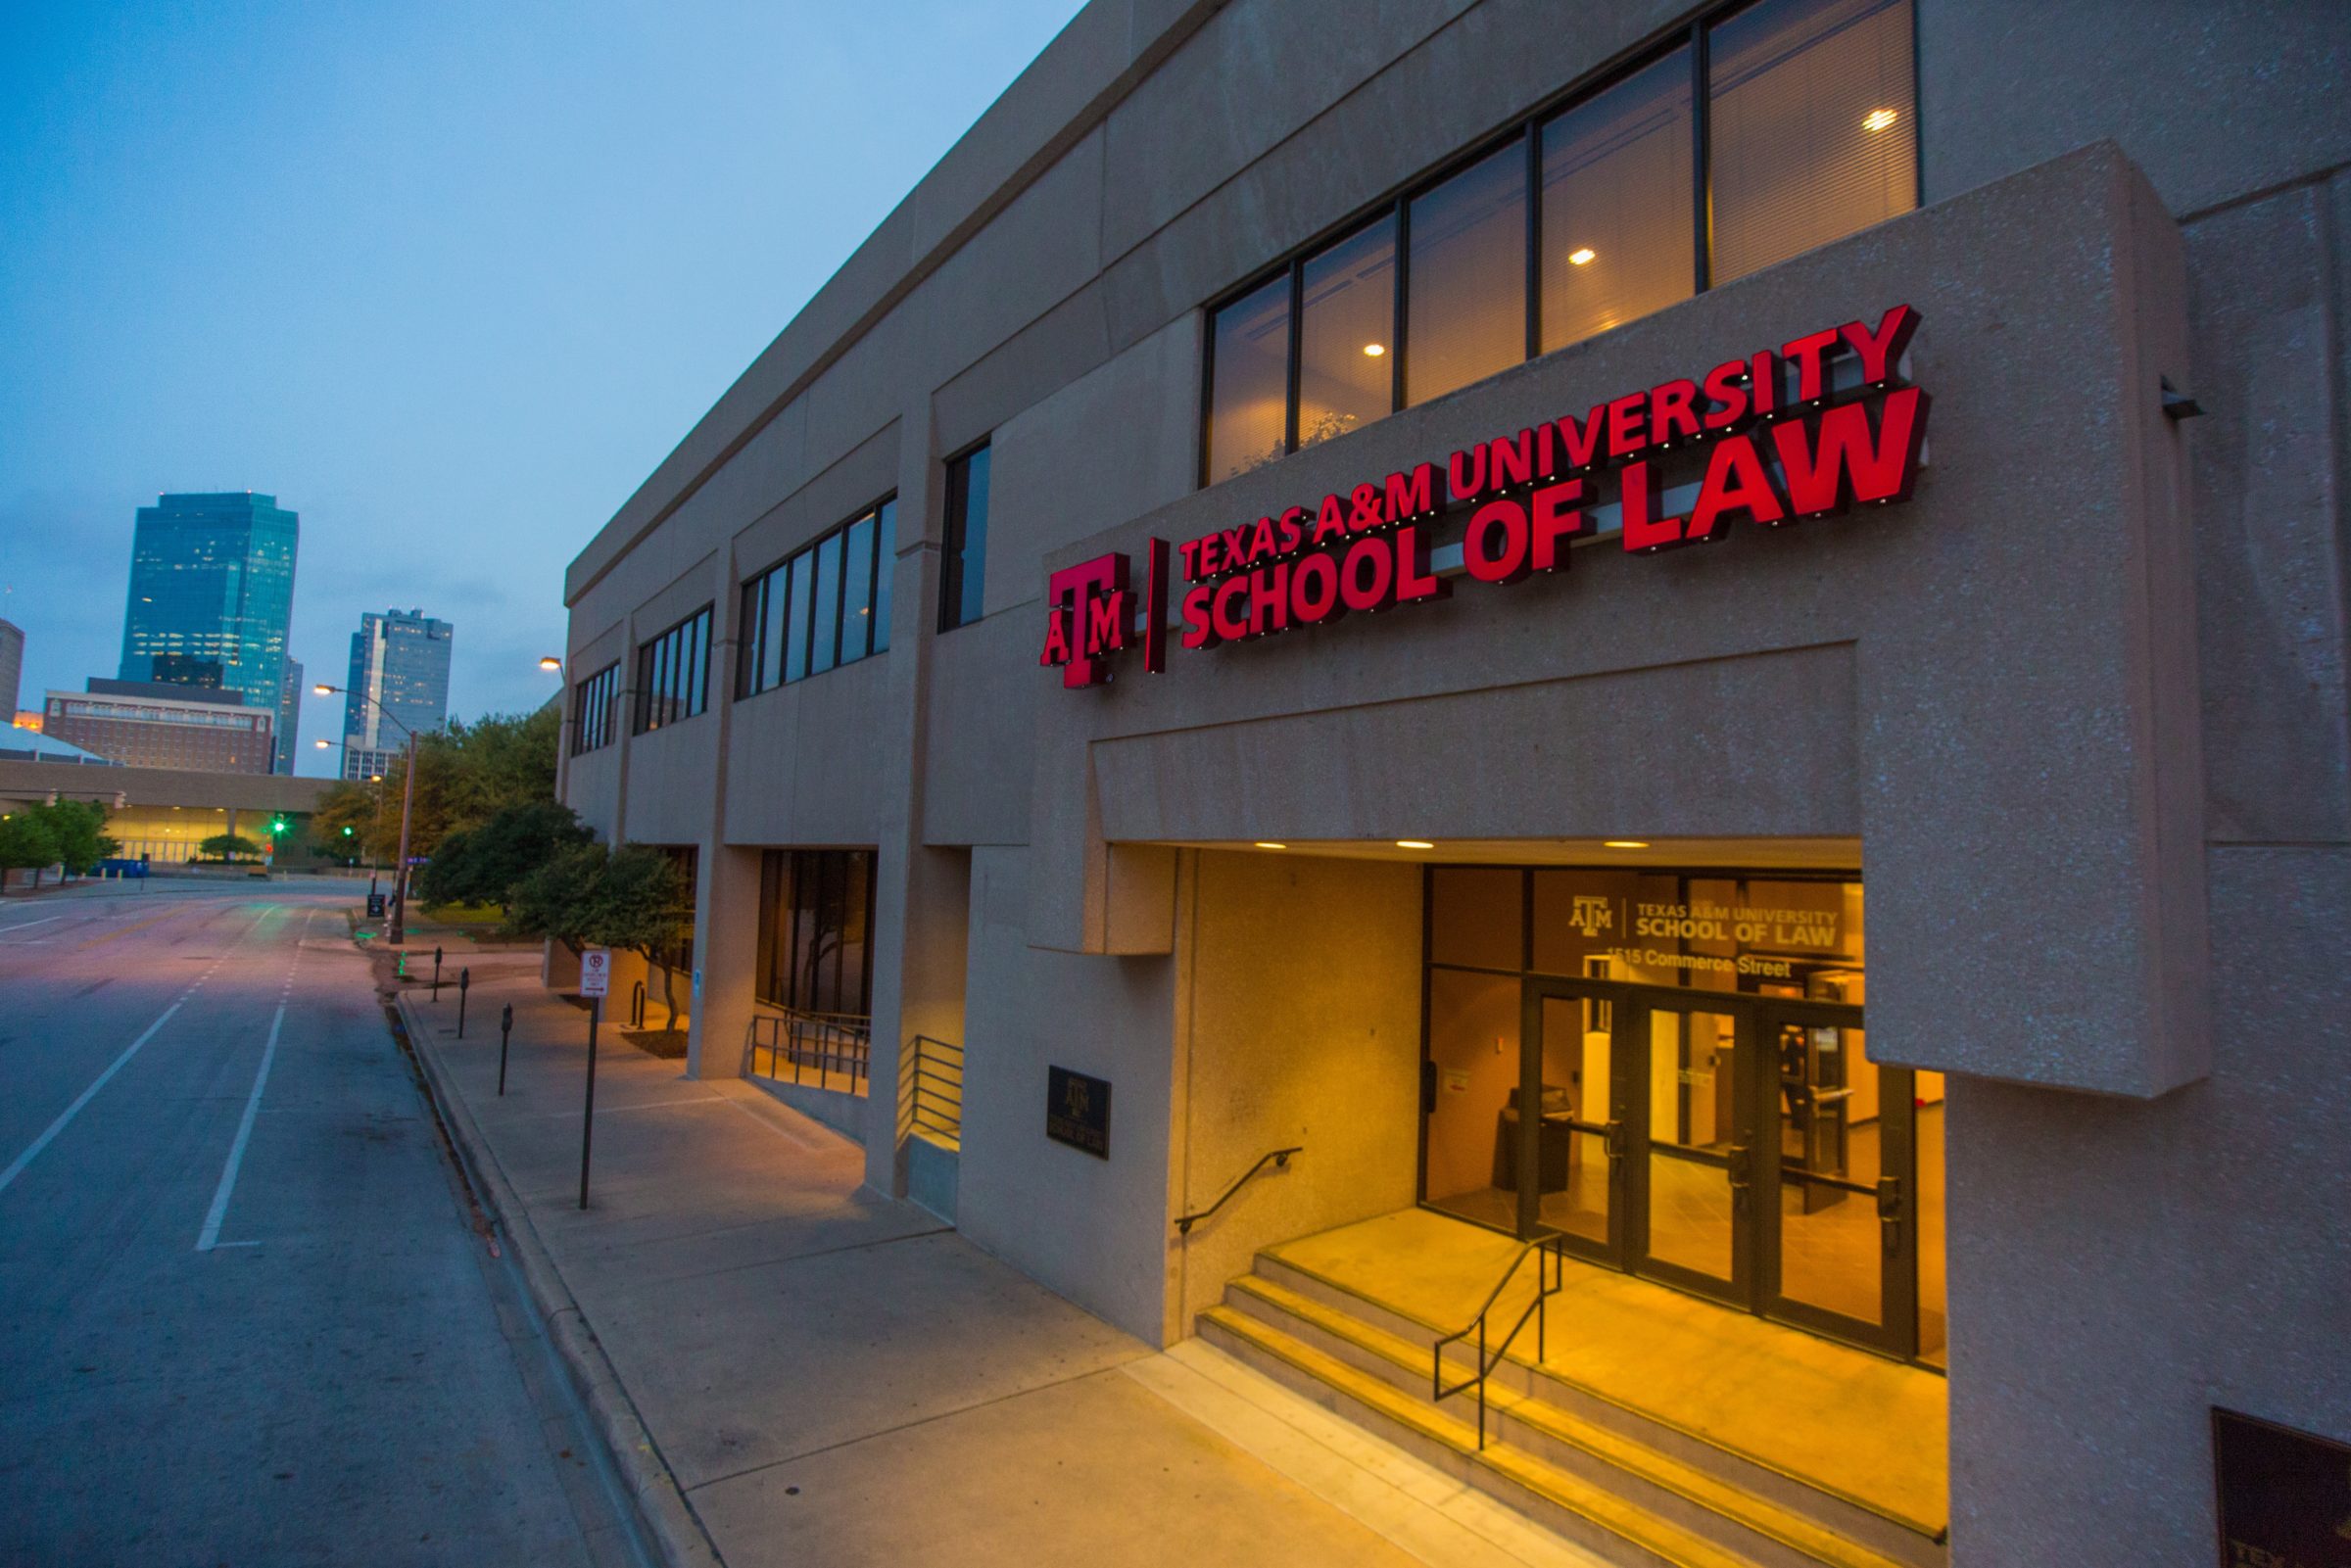 law school building exterior